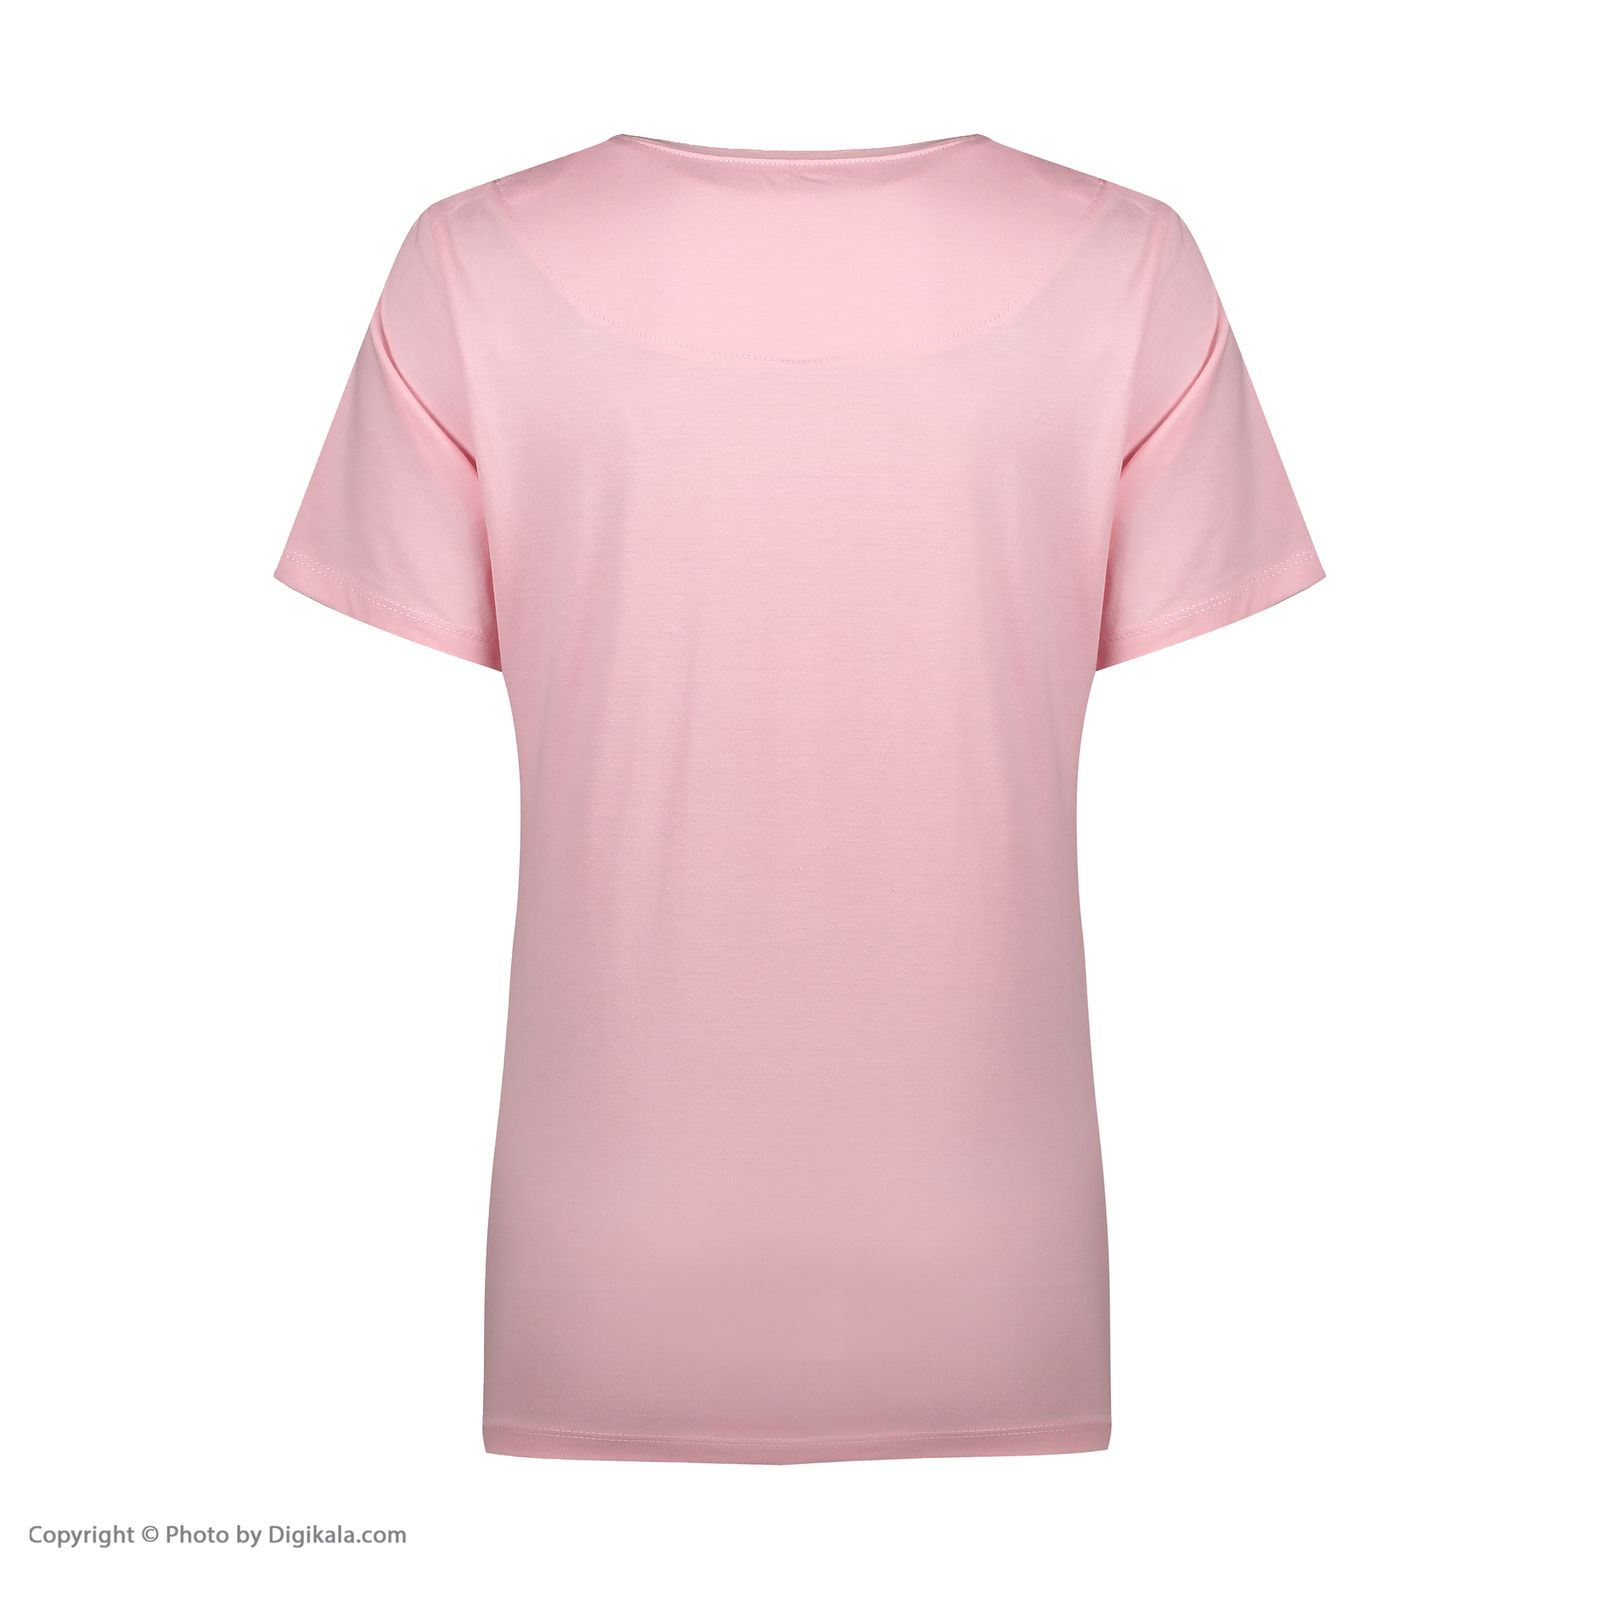 ست تی شرت و شلوارک راحتی زنانه مادر مدل 2041101-84 -  - 5